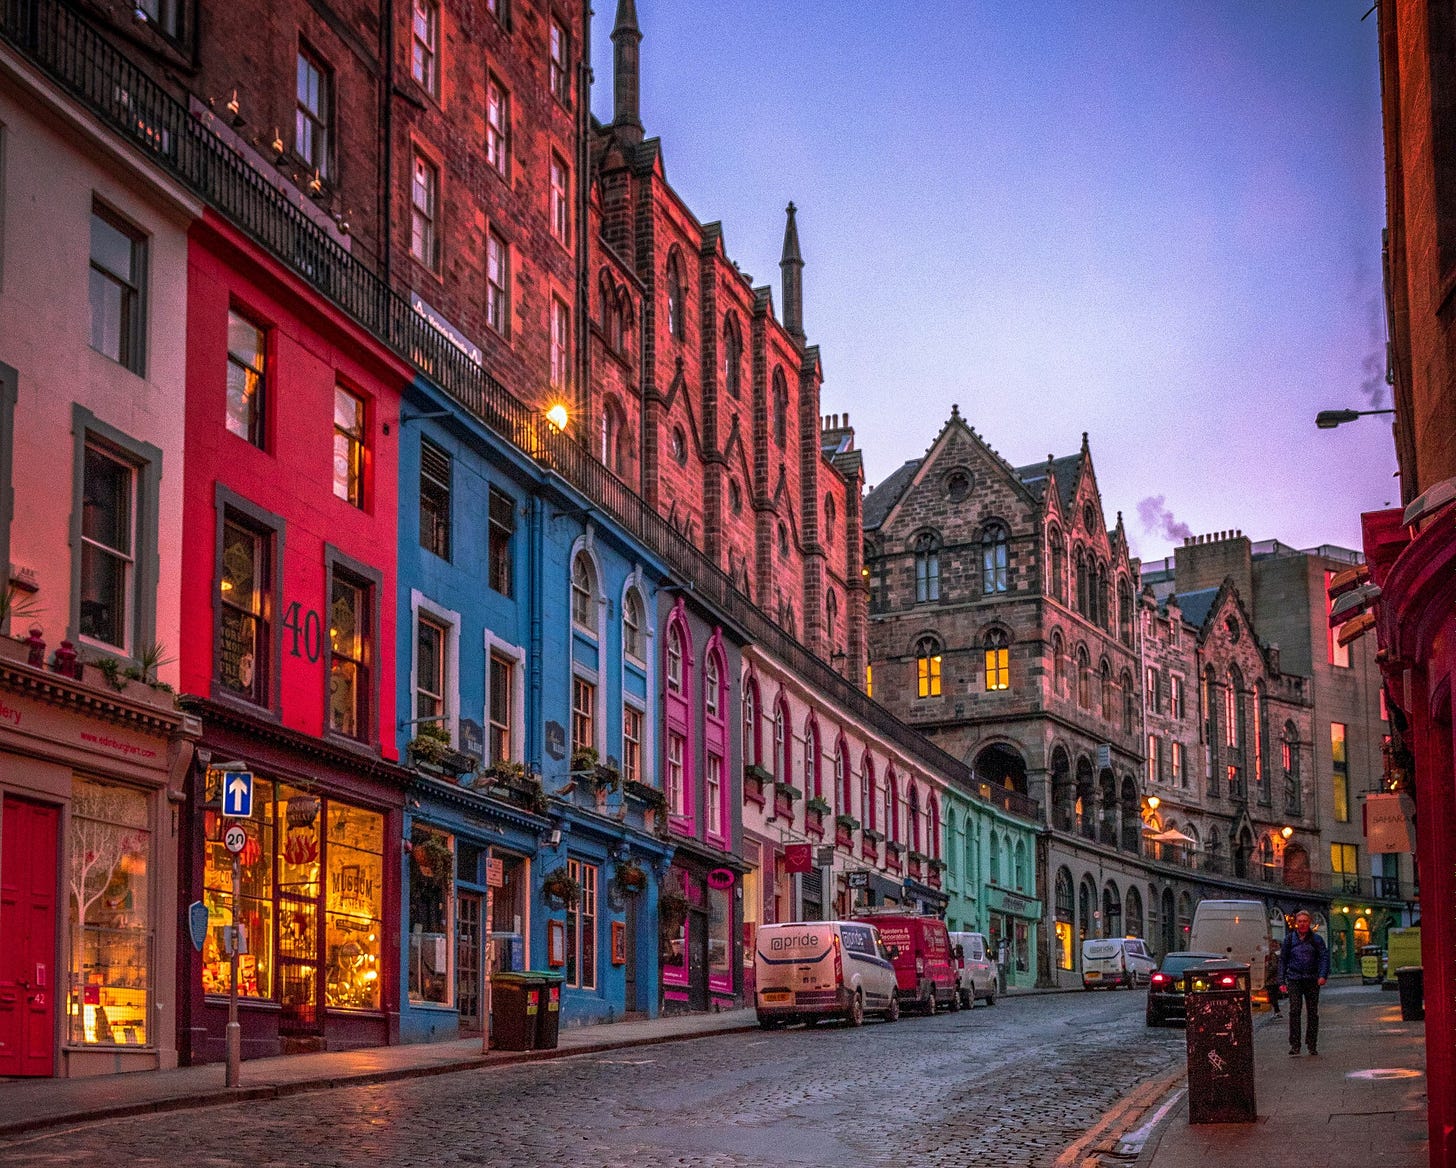 Victoria Street in Edinburgh’s old town (Source: Unsplash)